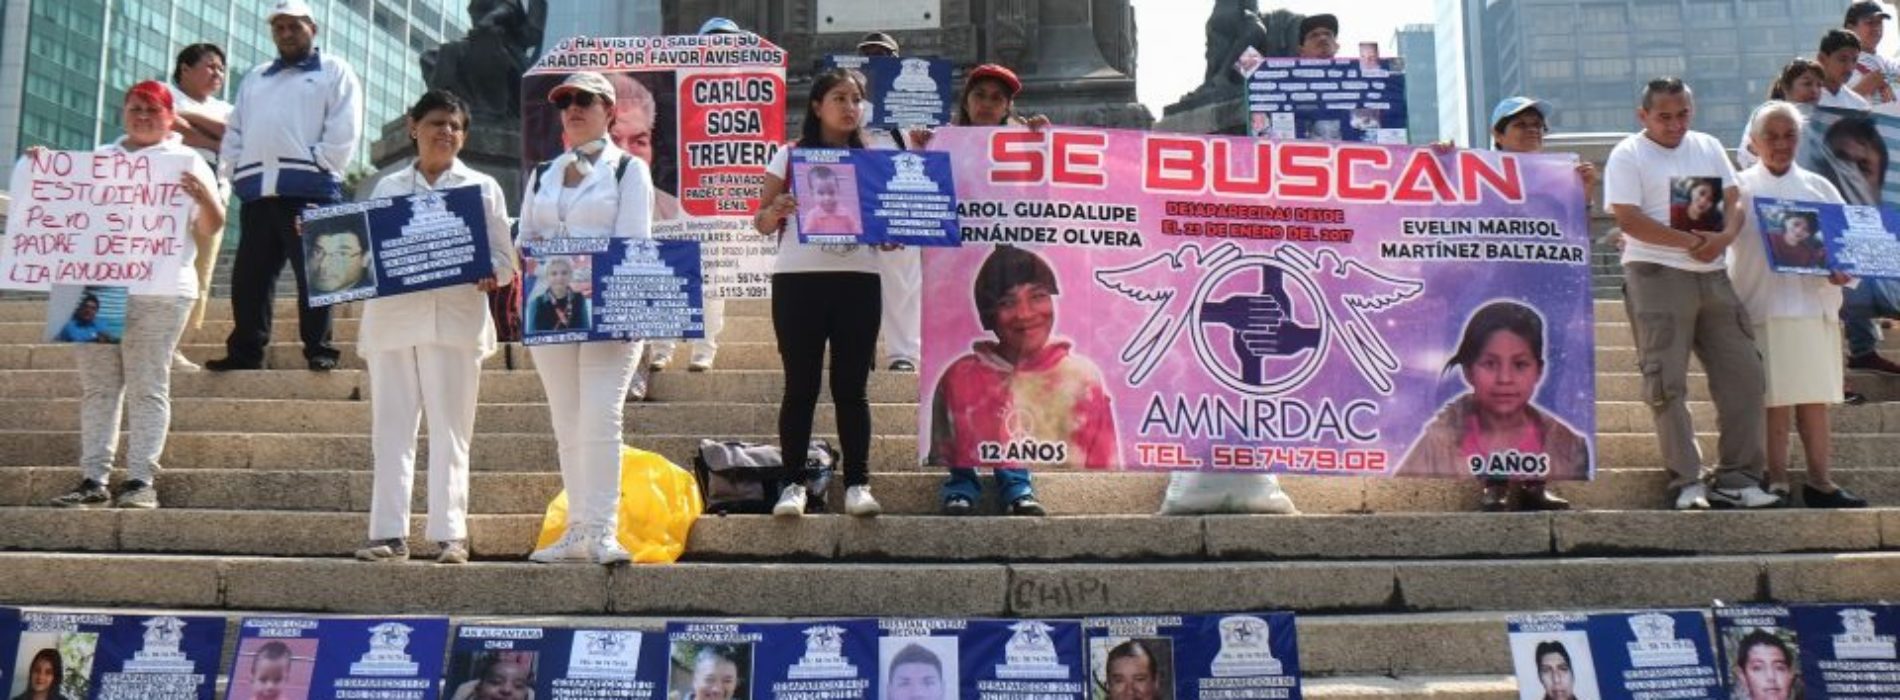 El Estado no busca a Cosme, ni a miles de niños, niñas y
adolescentes desaparecidos en México